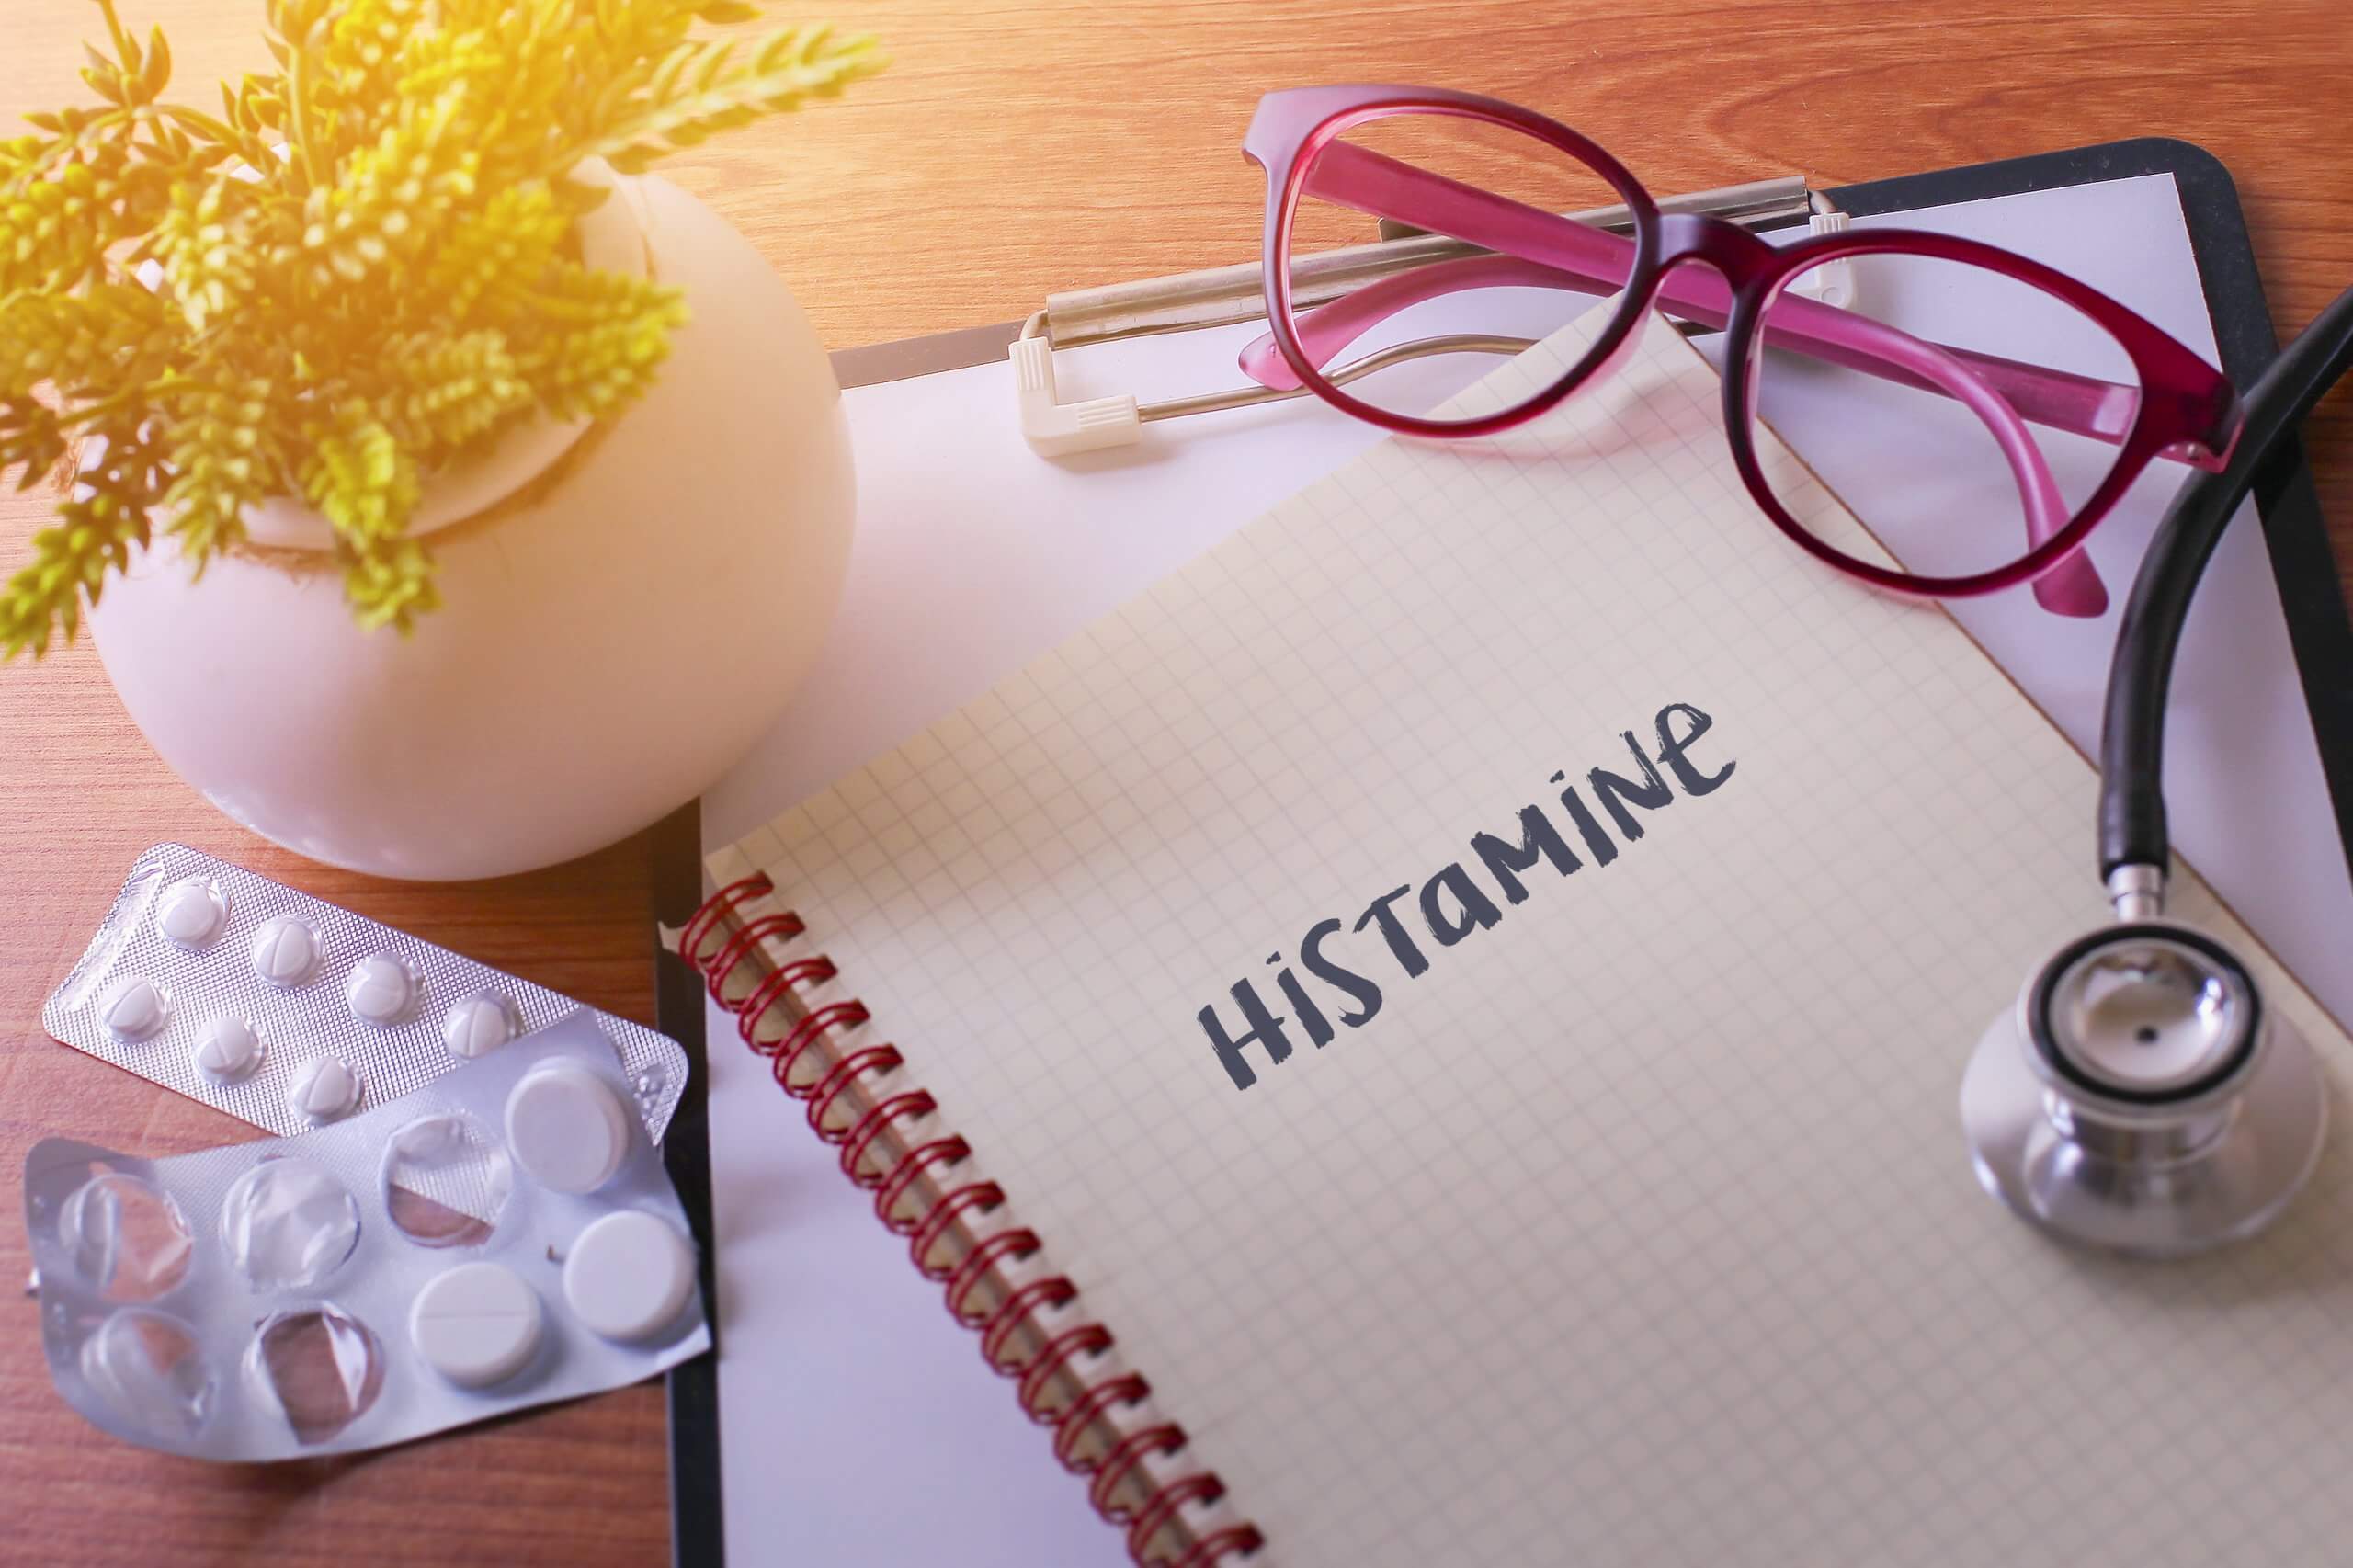 Histaminintoleranz – Ursachen und Bedeutung